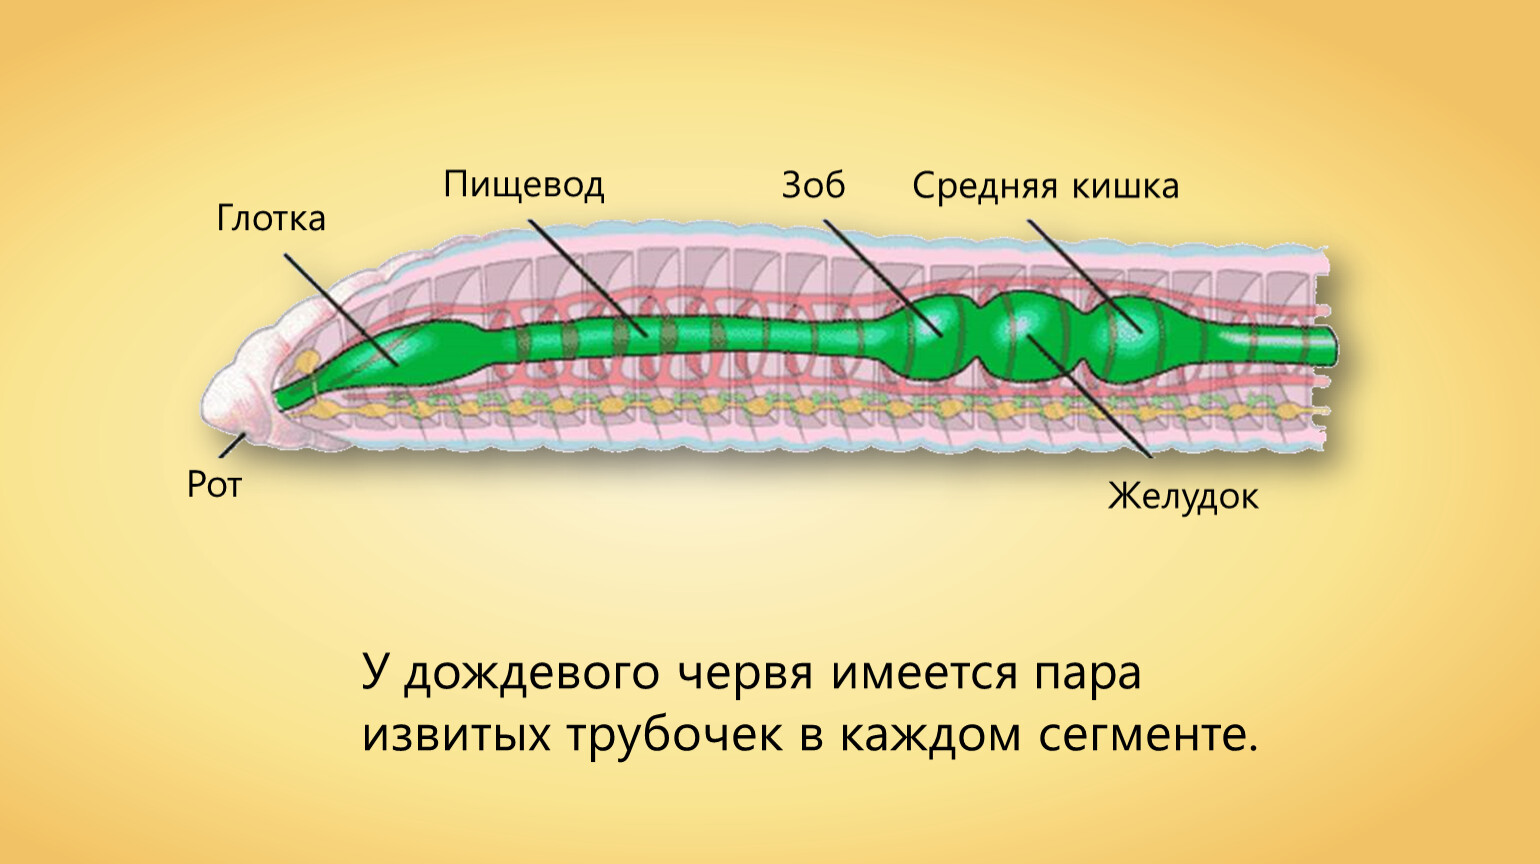 Пищеварительная система червя